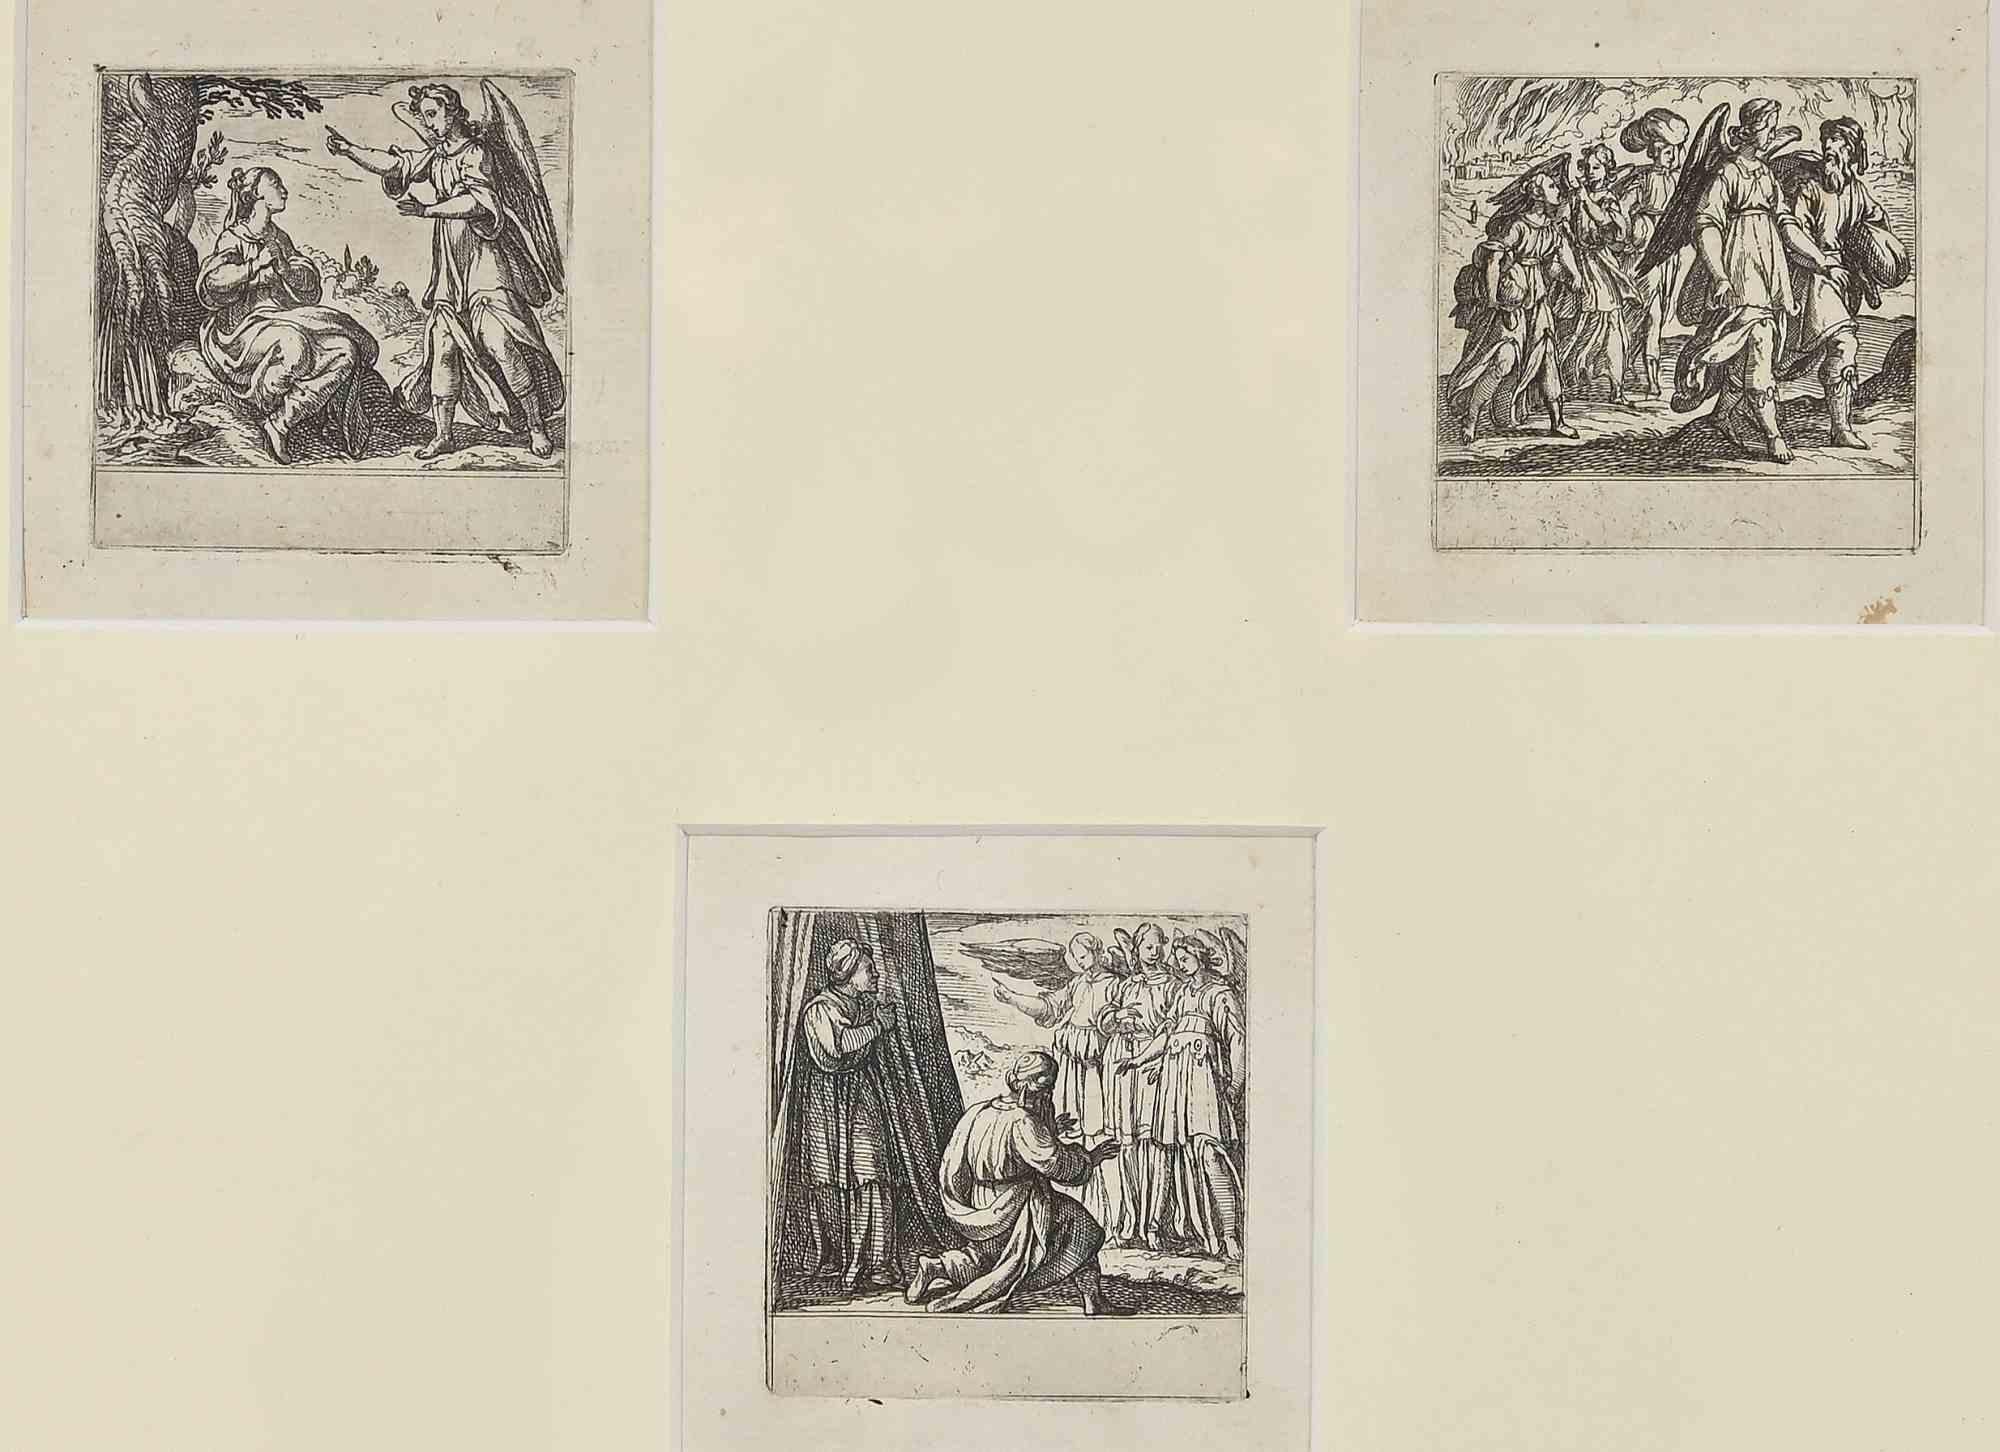 Histoires de la Genèse est une gravure réalisée par Antonio Tempesta au début du XVIIe siècle.

De gauche à droite : Annonciation, ville de Sodome en feu. Lot qui est sauvé avec ses filles escortées par des anges

Elle fait partie d'une série de